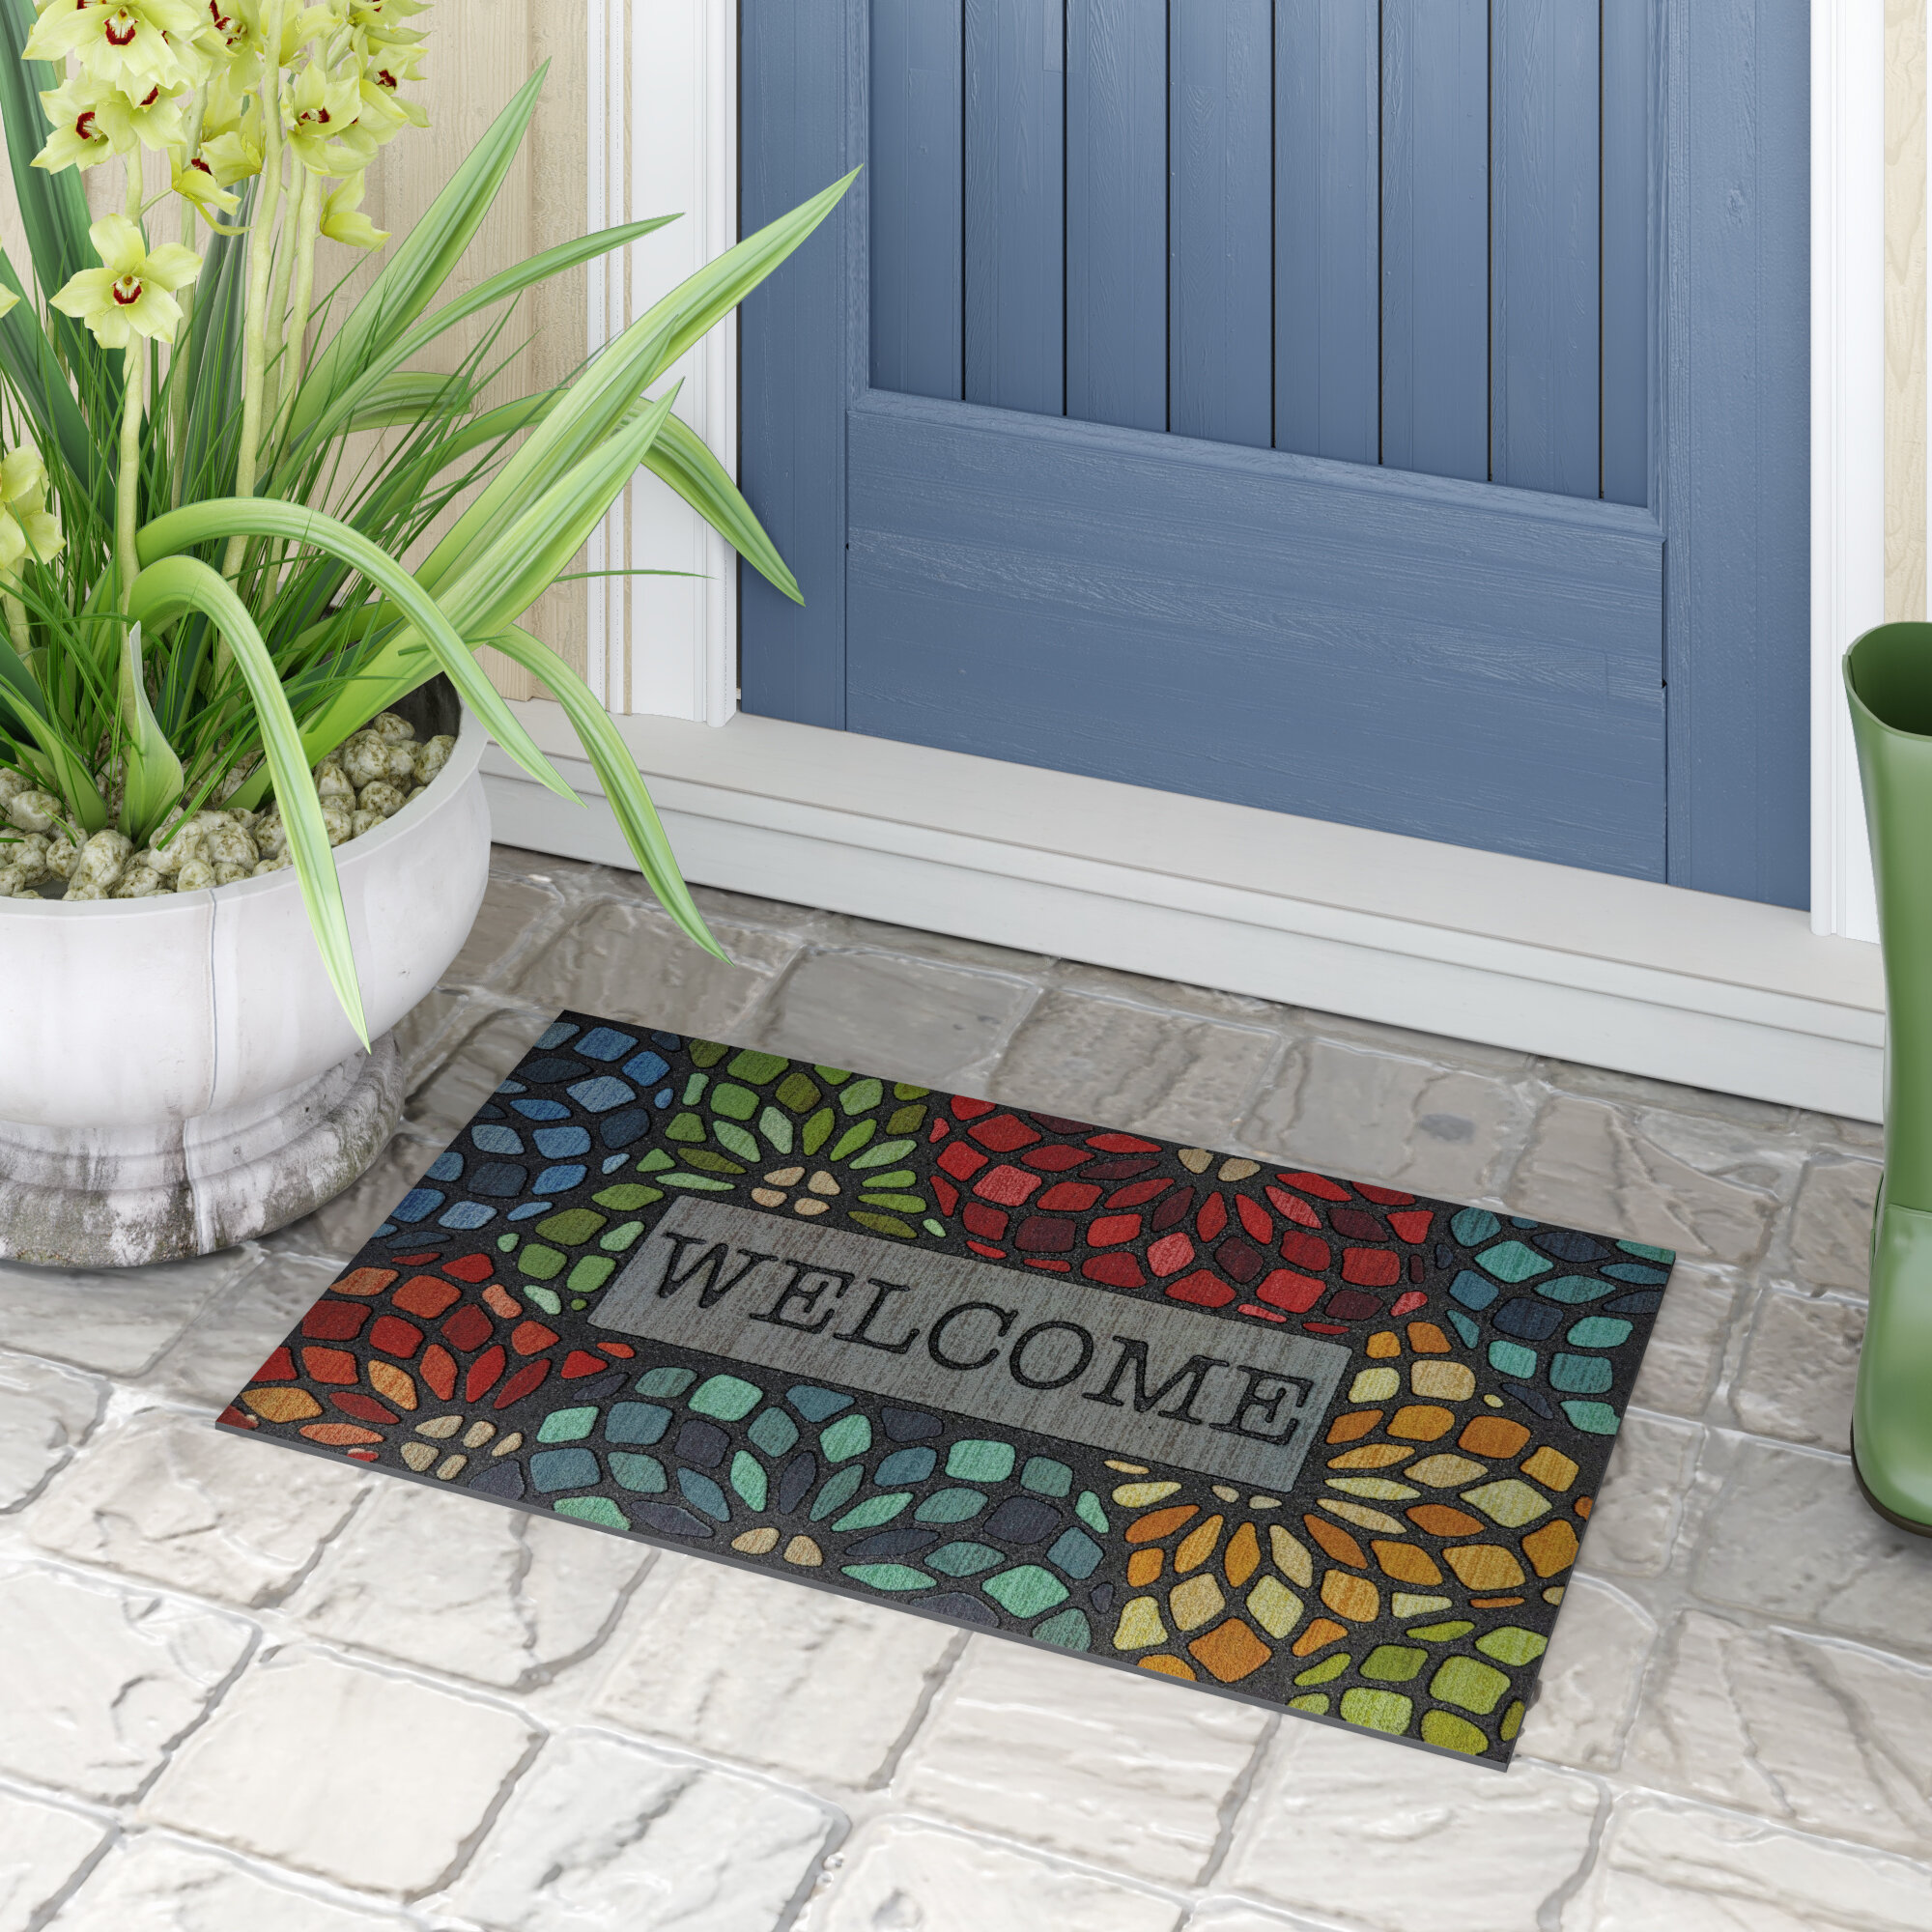 Home Creative Welcome Doormat In/Outdoor Rubber Floor Non Slip Rug Pad Cushion 